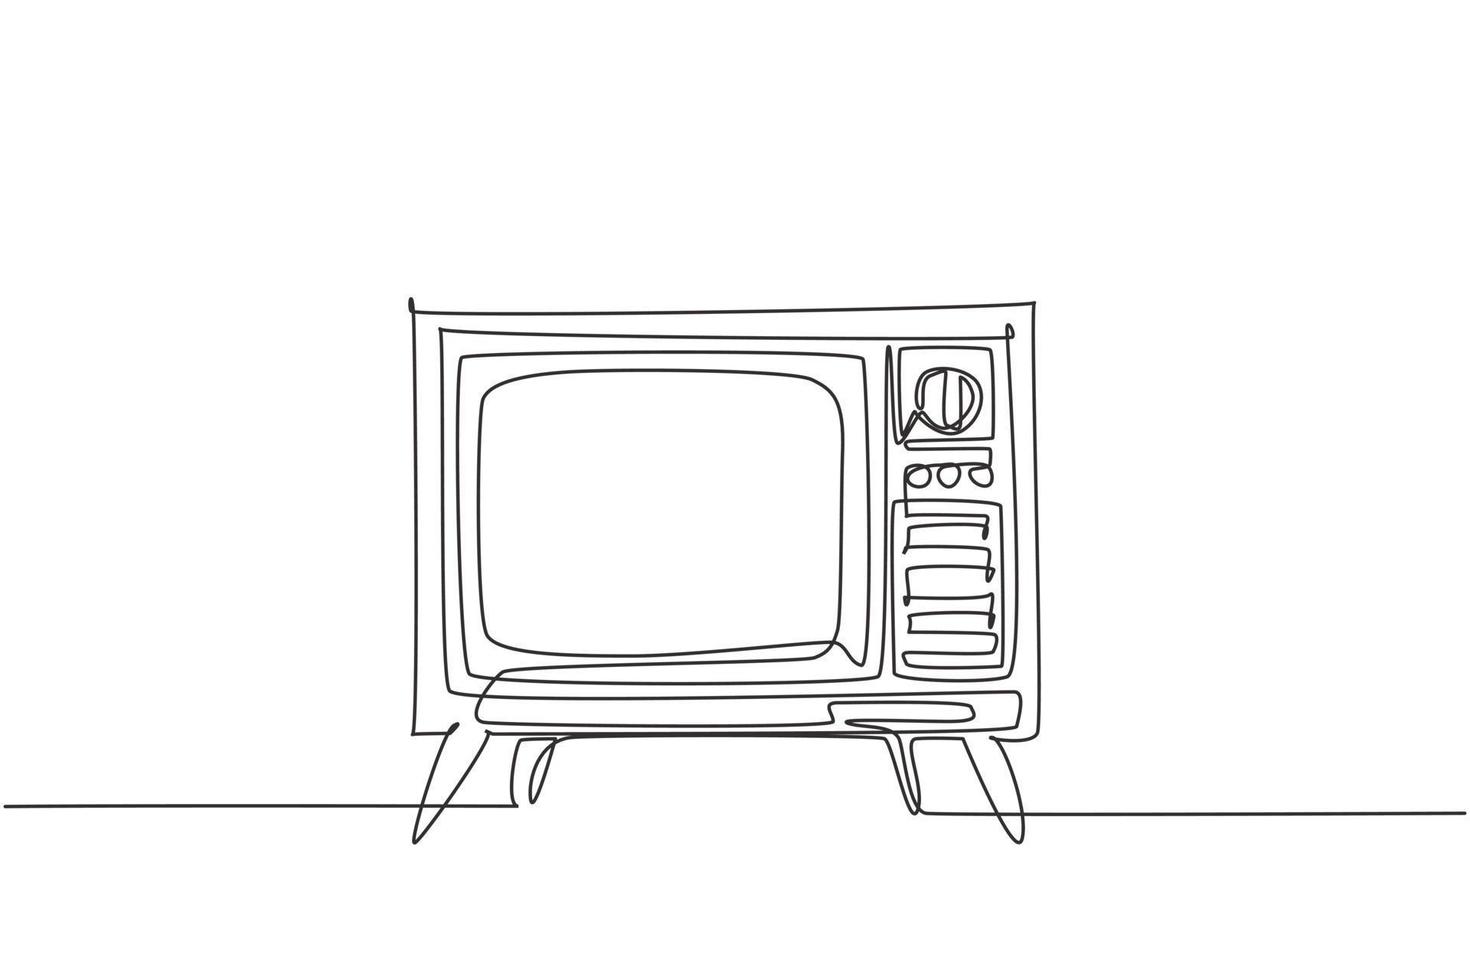 enkele doorlopende lijntekening van retro ouderwetse tv met houten kist en been. antieke vintage analoge televisie concept een lijn tekenen grafisch ontwerp vectorillustratie vector